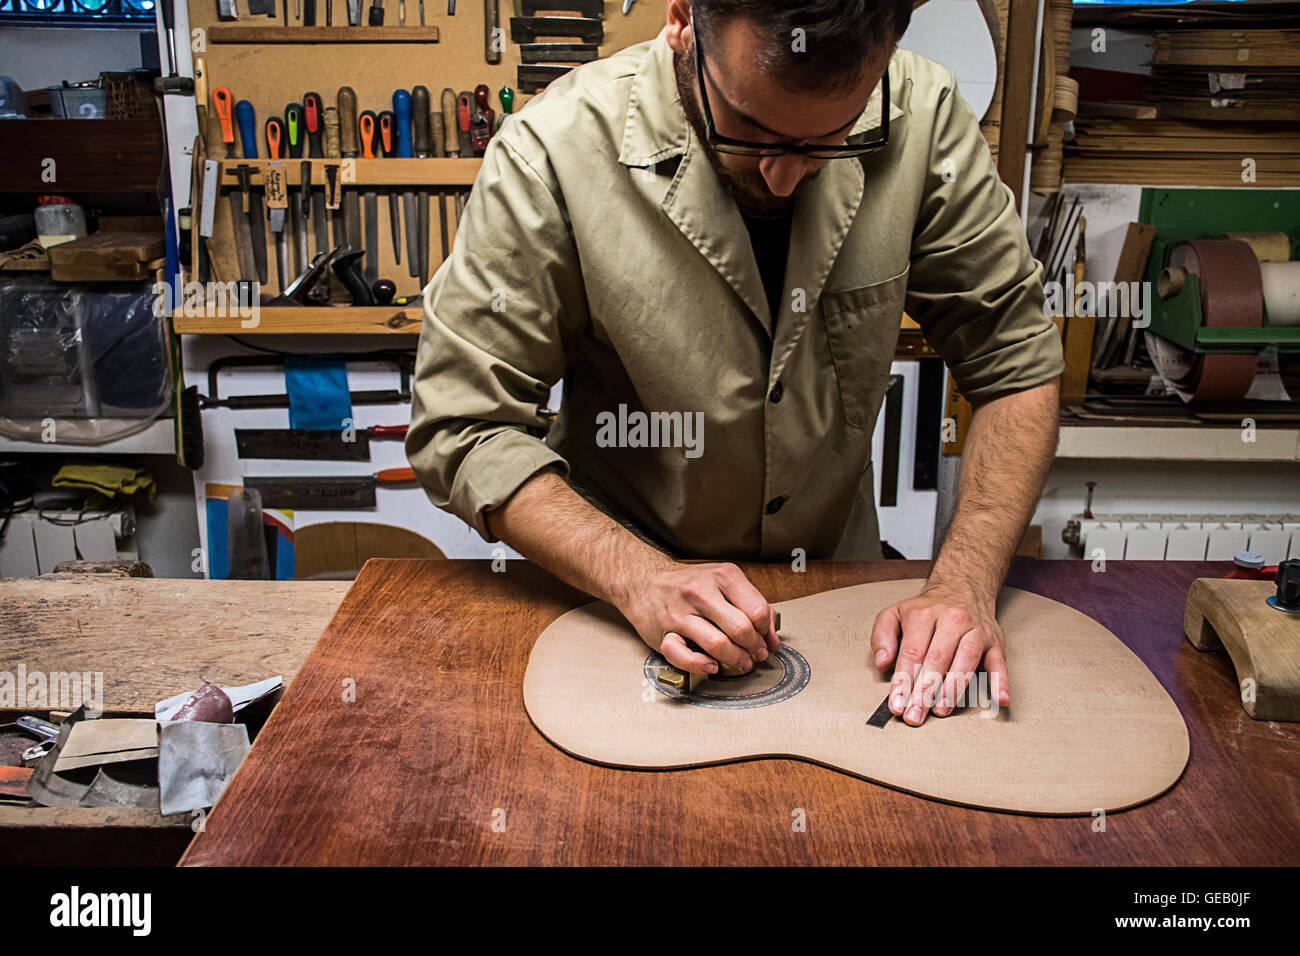 Gitarrenbauer, die Herstellung einer Gitarre in seiner Werkstatt  Stockfotografie - Alamy